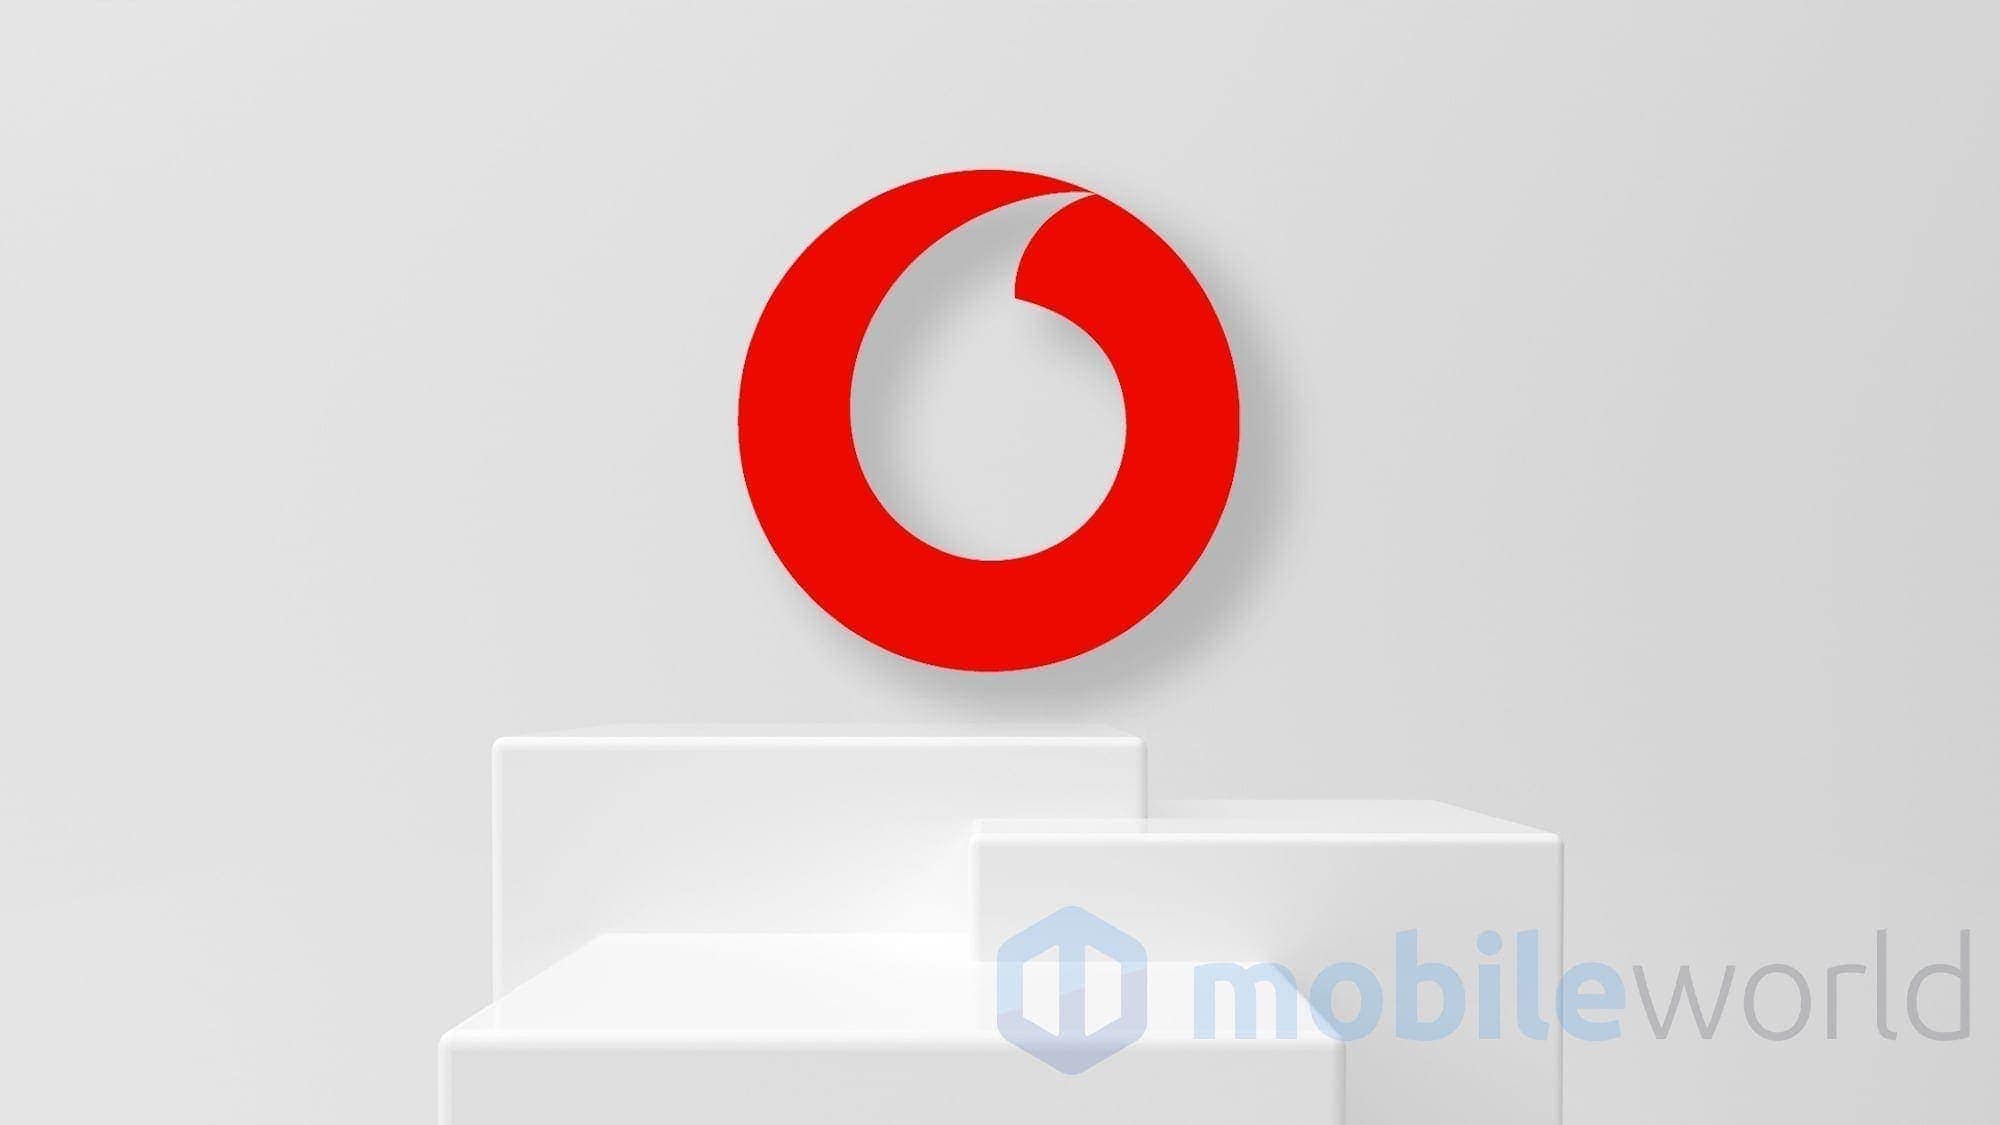 Rimodulazione Vodafone: stabiliti nuovi aumenti dei costi mensile per alcuni clienti di rete fissa. Ecco da quando